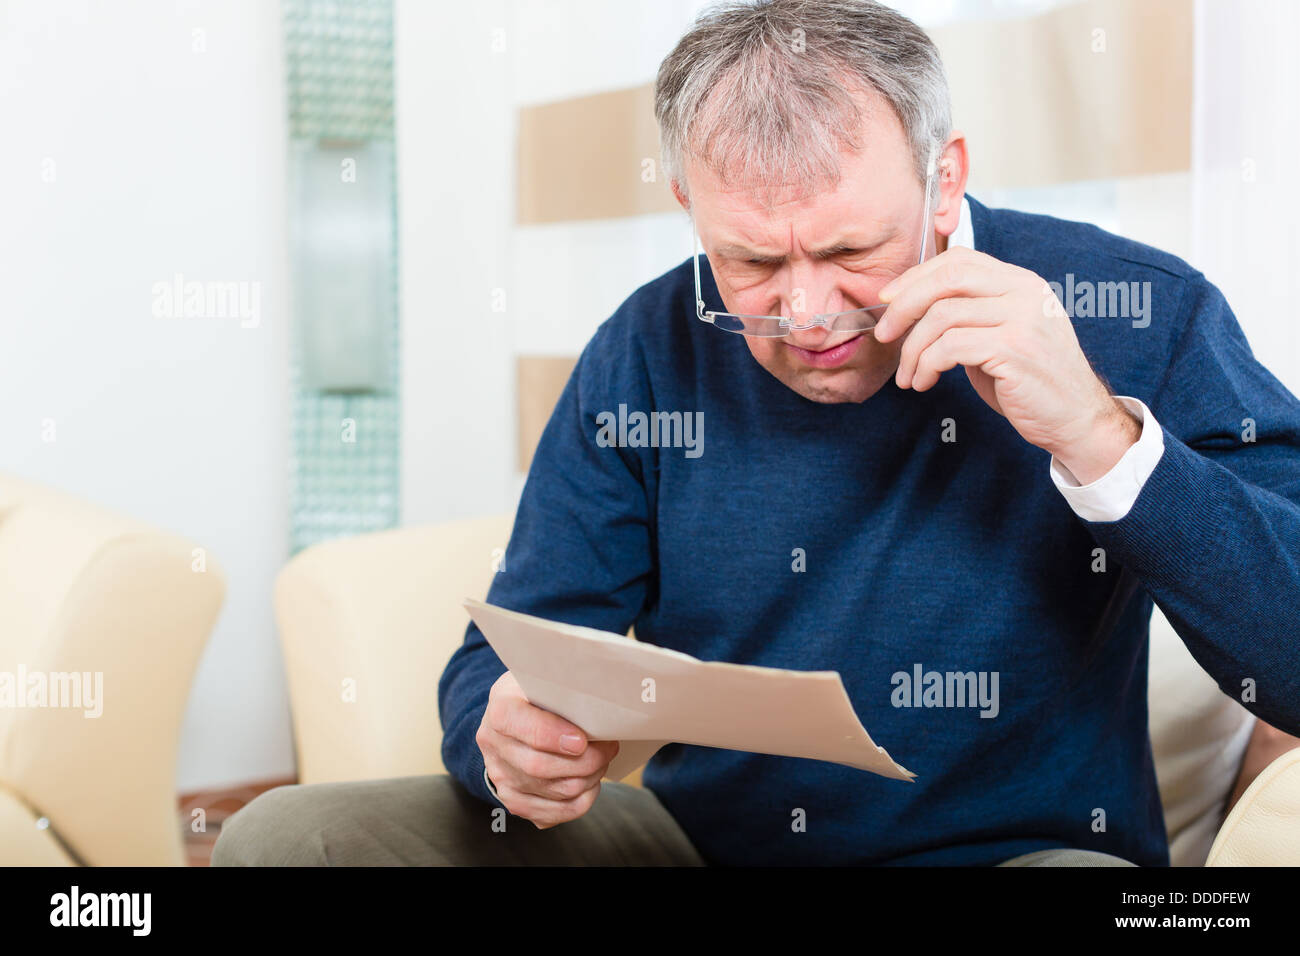 Homme plus âgé ou Senior ont reçu une lettre, peut-être que c'est un rappel ou un projet de loi Banque D'Images